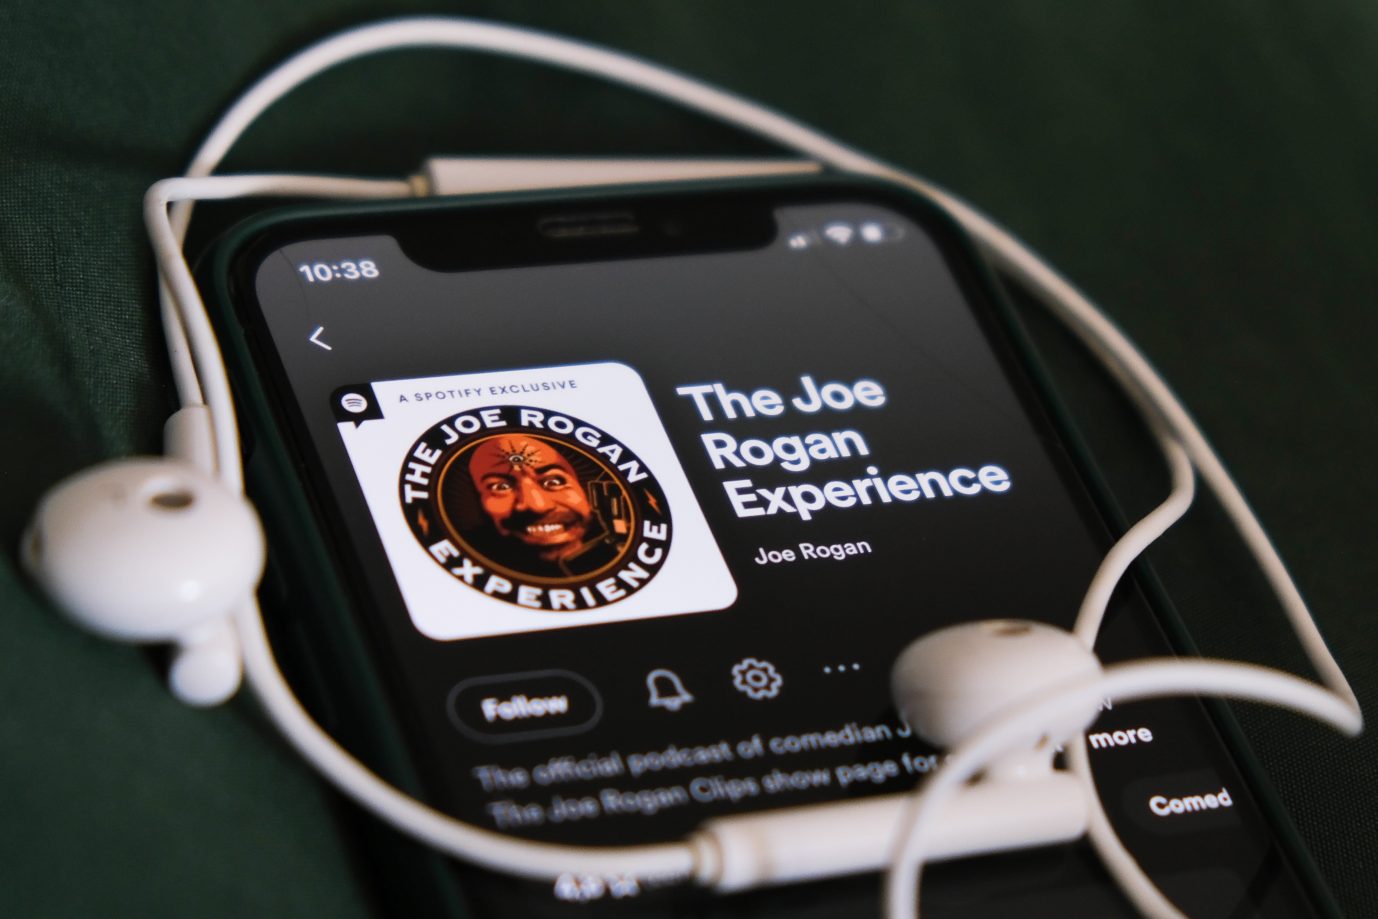 Der Podcast des US-Amerikaners Joe Rogan auf Spotify: Der Musik-Streamingdienst will den Kanal derzeit nicht löschen